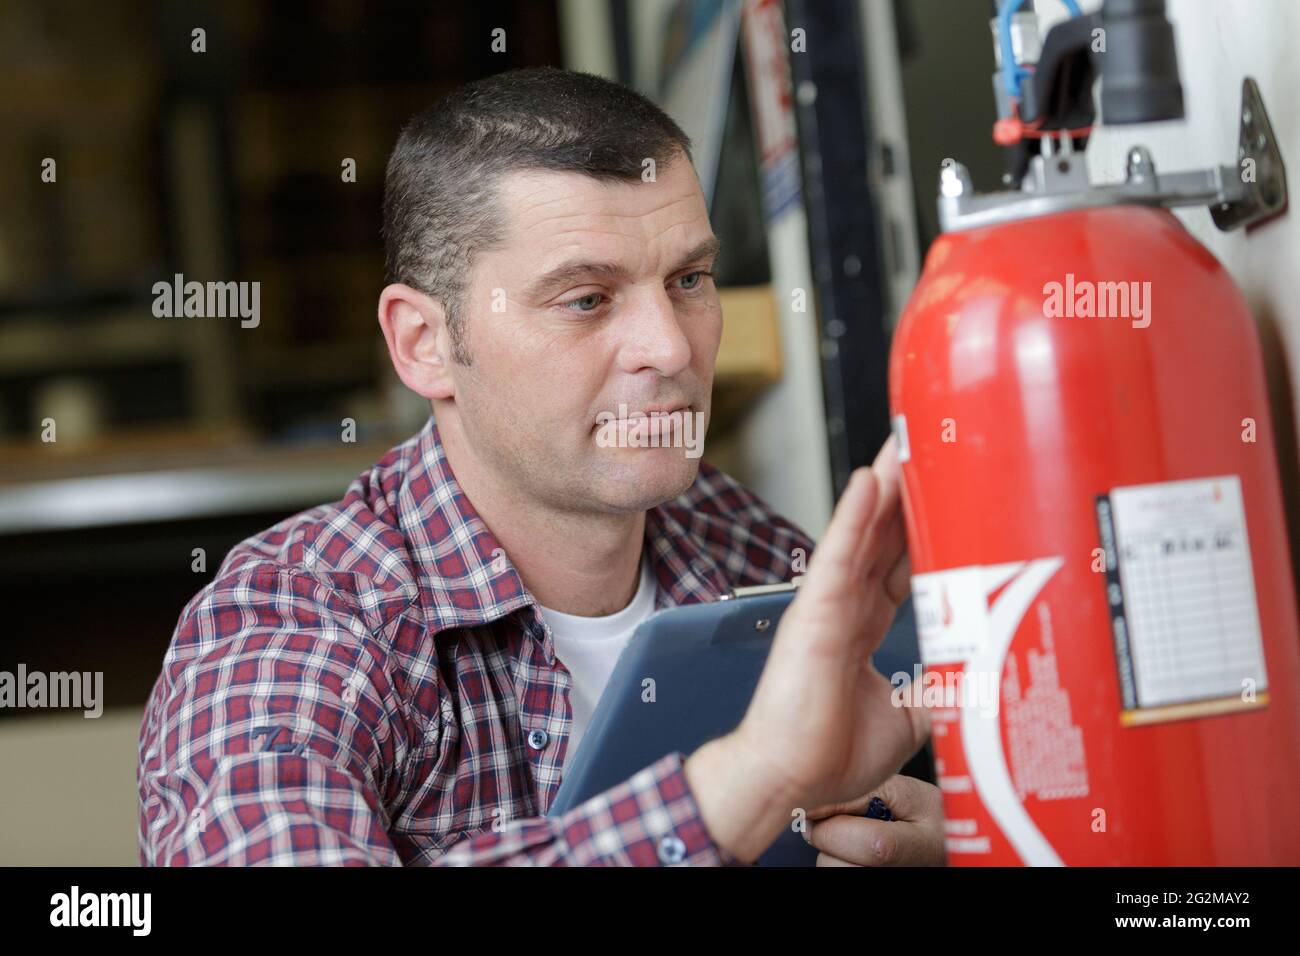 Männlicher Techniker, der die Dokumentation des Feuerlöschers überprüft  Stockfotografie - Alamy